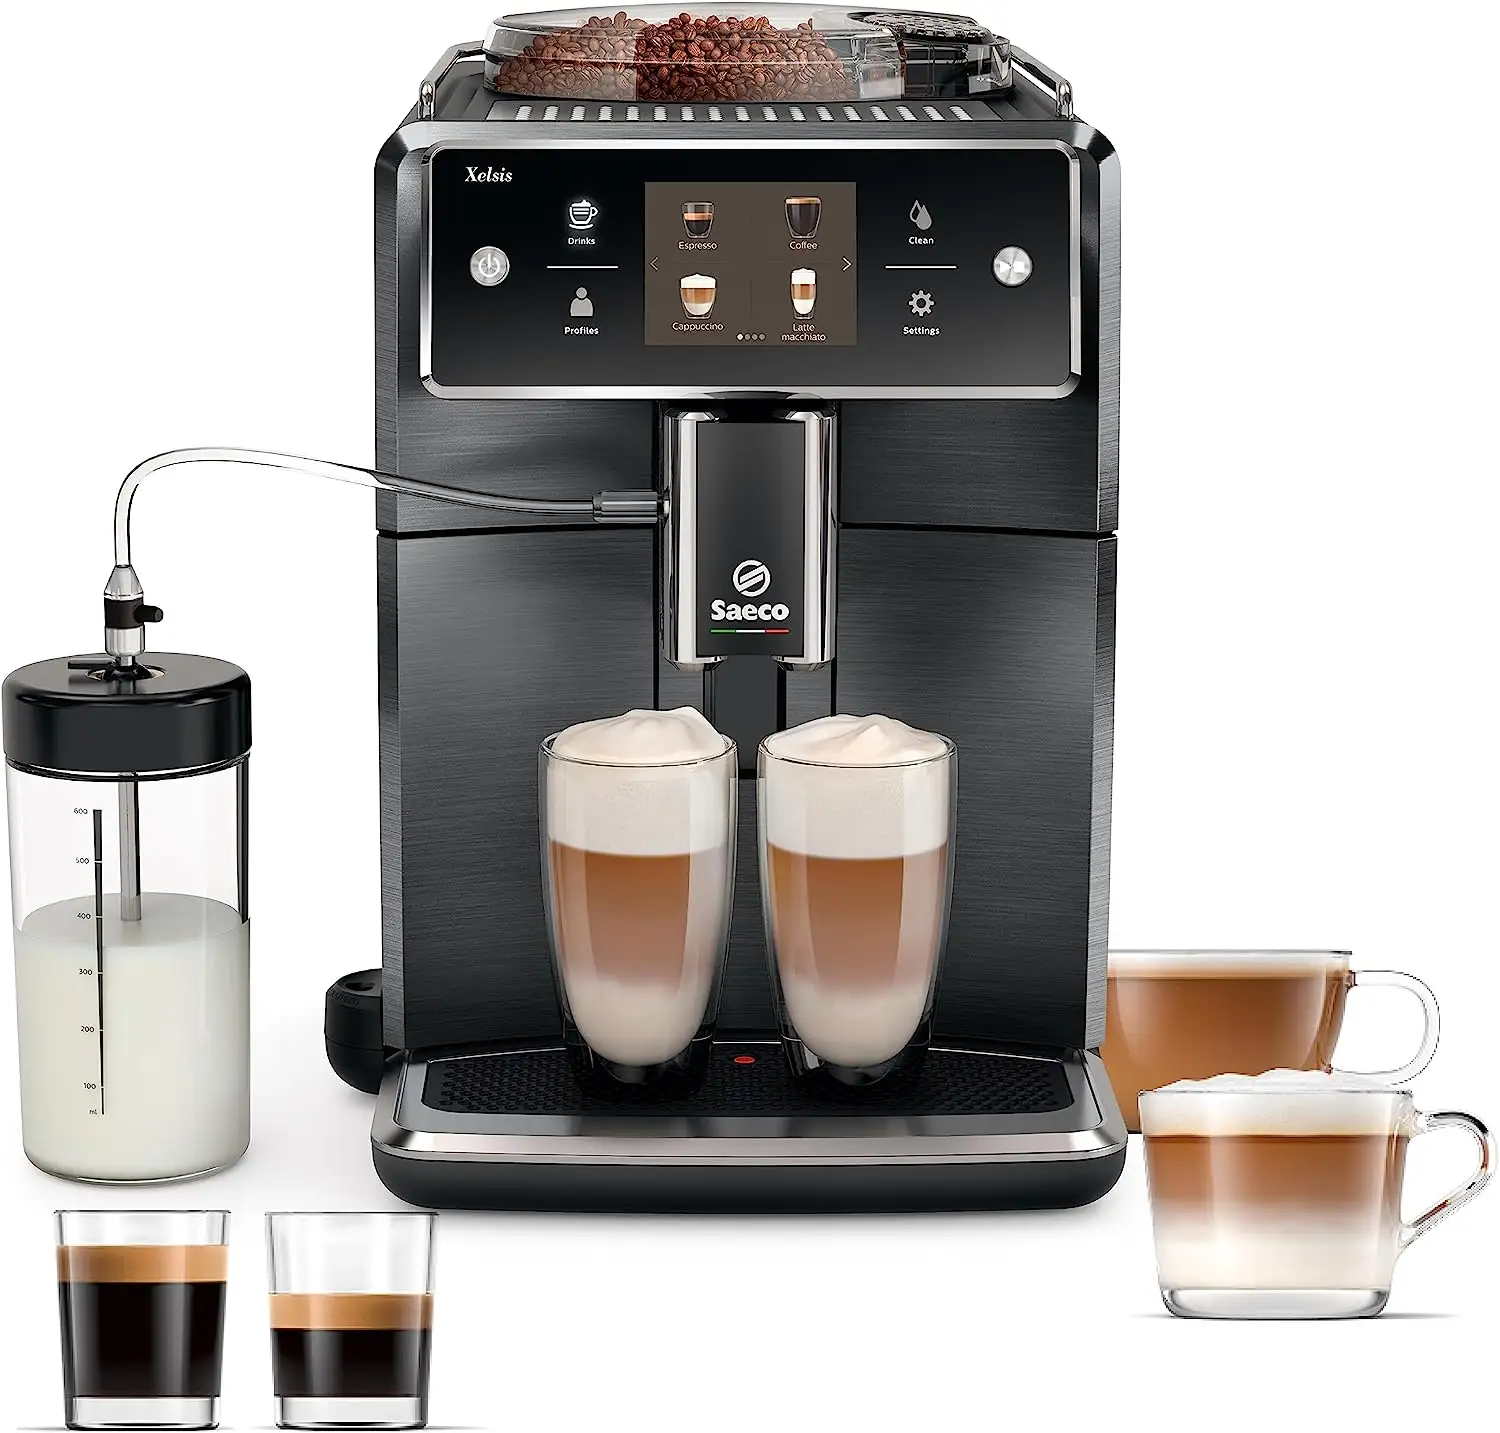 Miglior prezzo originale Saeco Xelsis macchina per caffè Espresso Super automatica-sistema latte LatteDuo, 15 varietà di caffè, 6 profili utente,